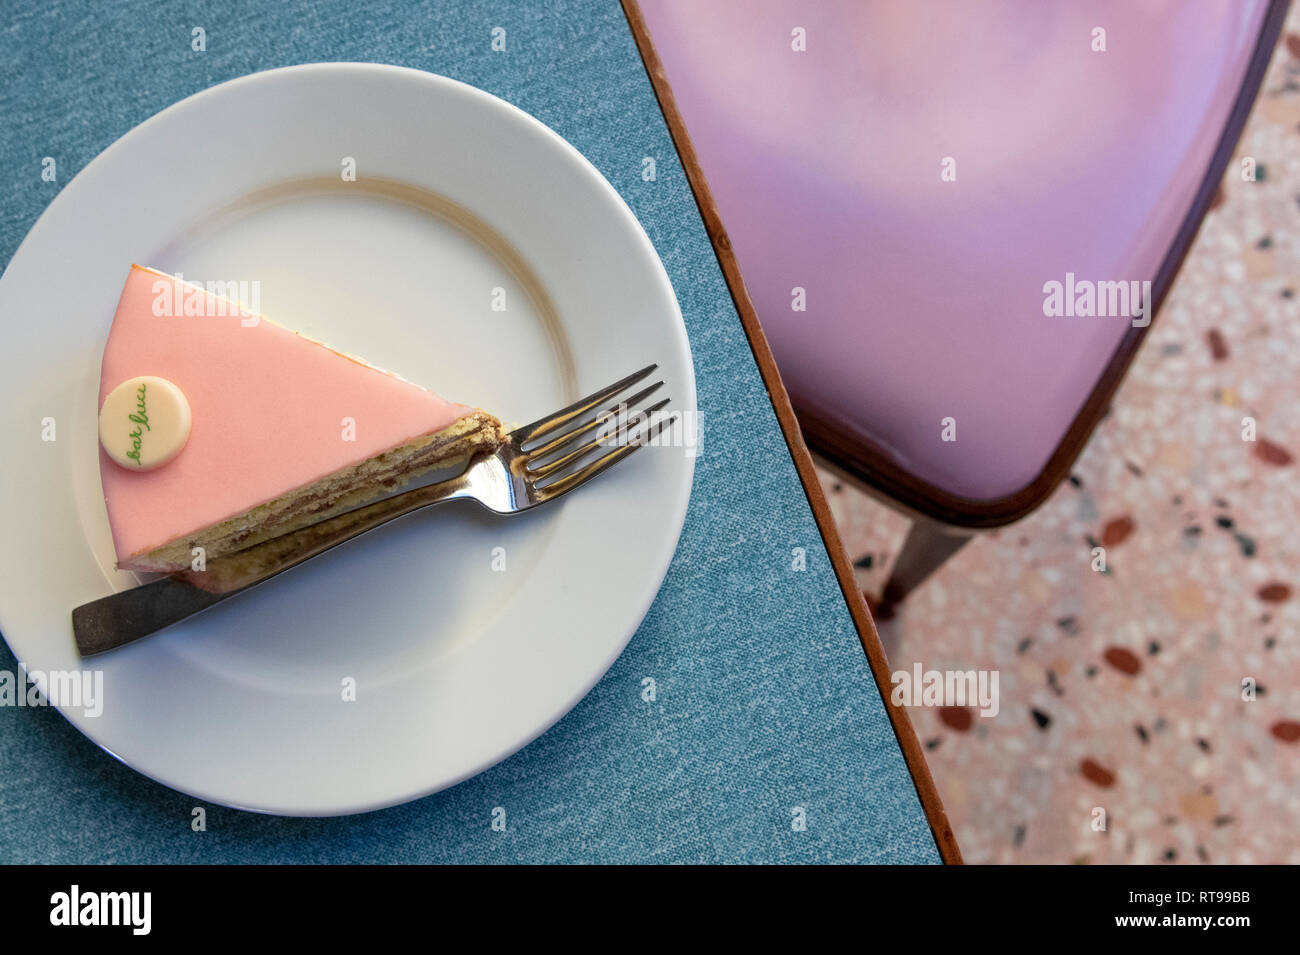 Una fetta di torta Rosa e mobili in colori pastello a Bar Luce, Wes Anderson-ispirato bar e caffetteria nella Fondazione Prada quartiere di Milano, Italia Foto Stock